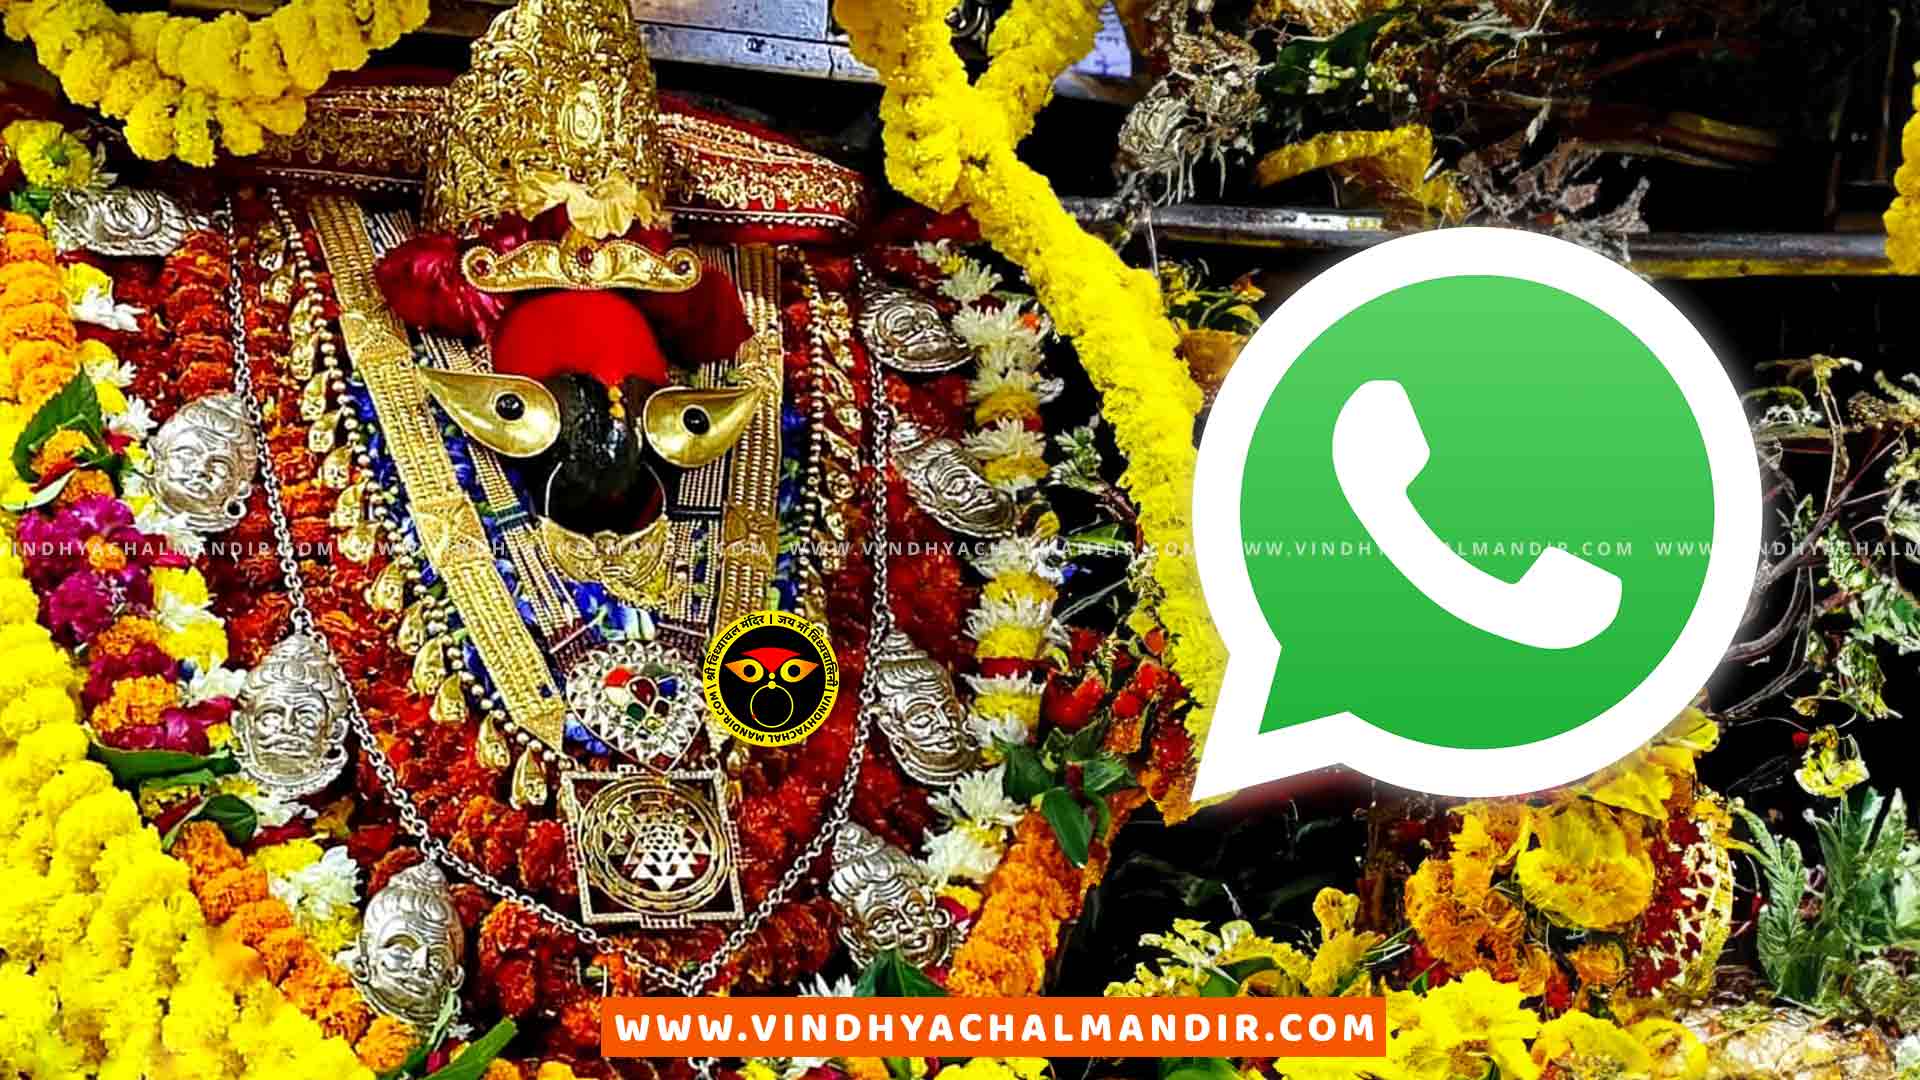 Vindhyachal Mandir WhatsApp Group Link